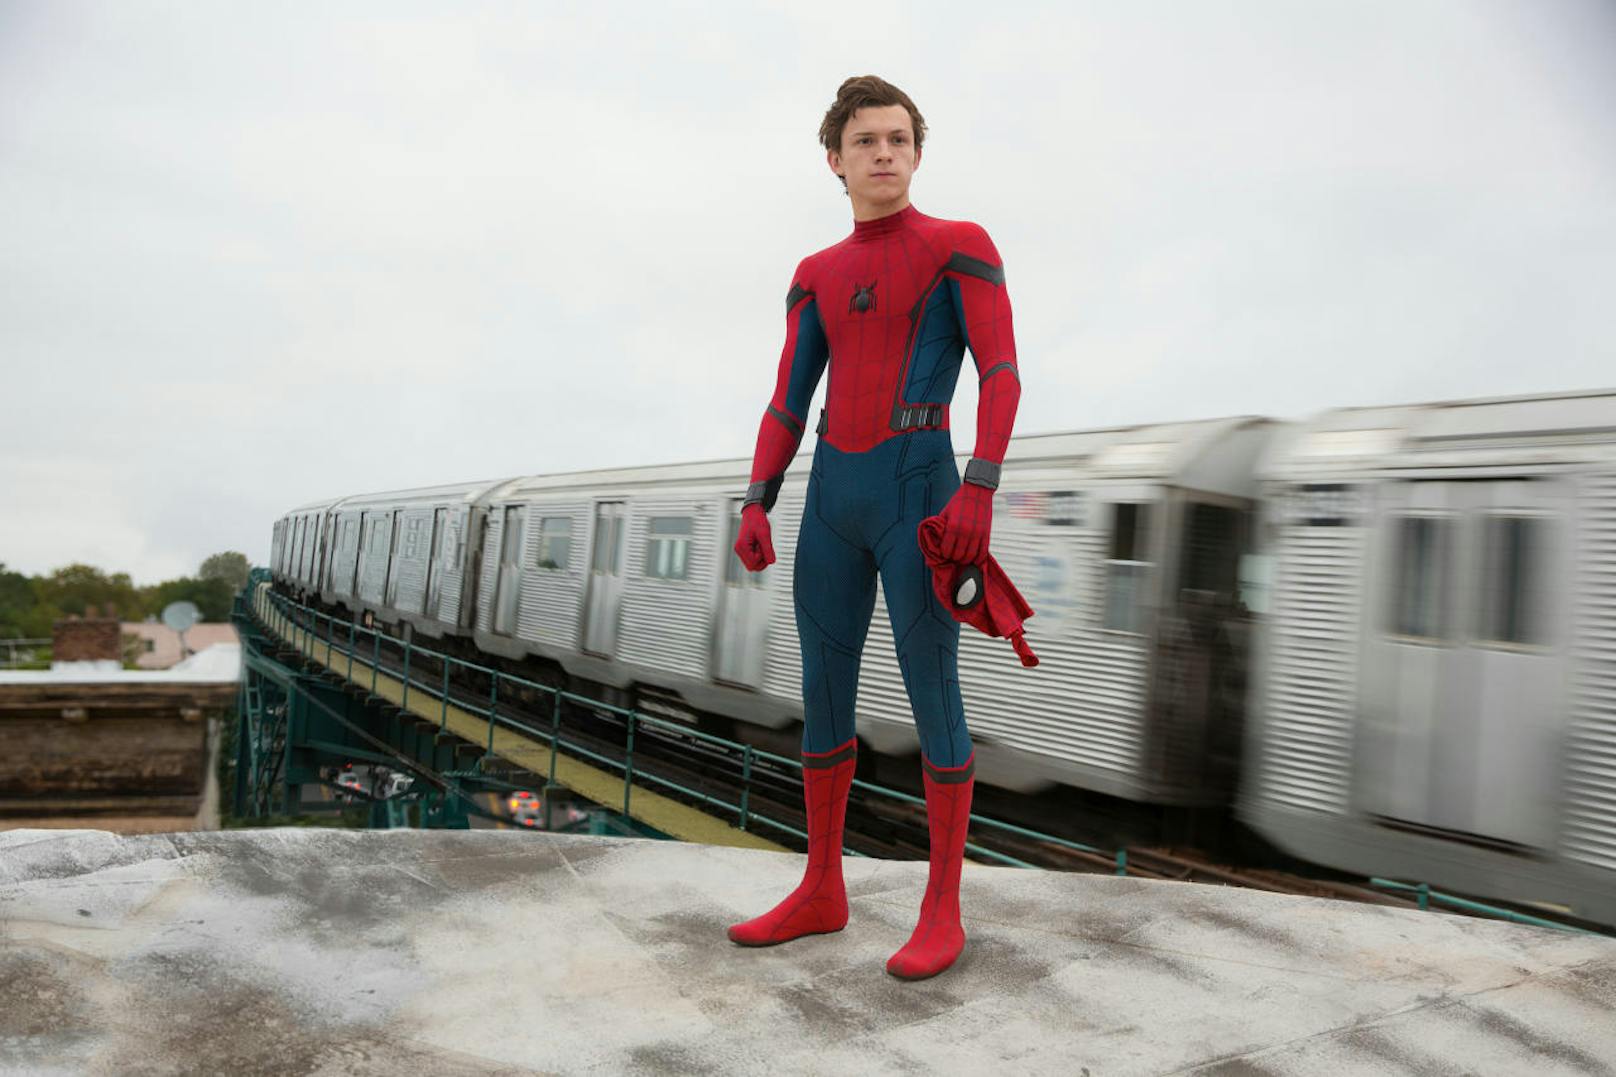 Filmbrunch Juli 17: Spiderman         